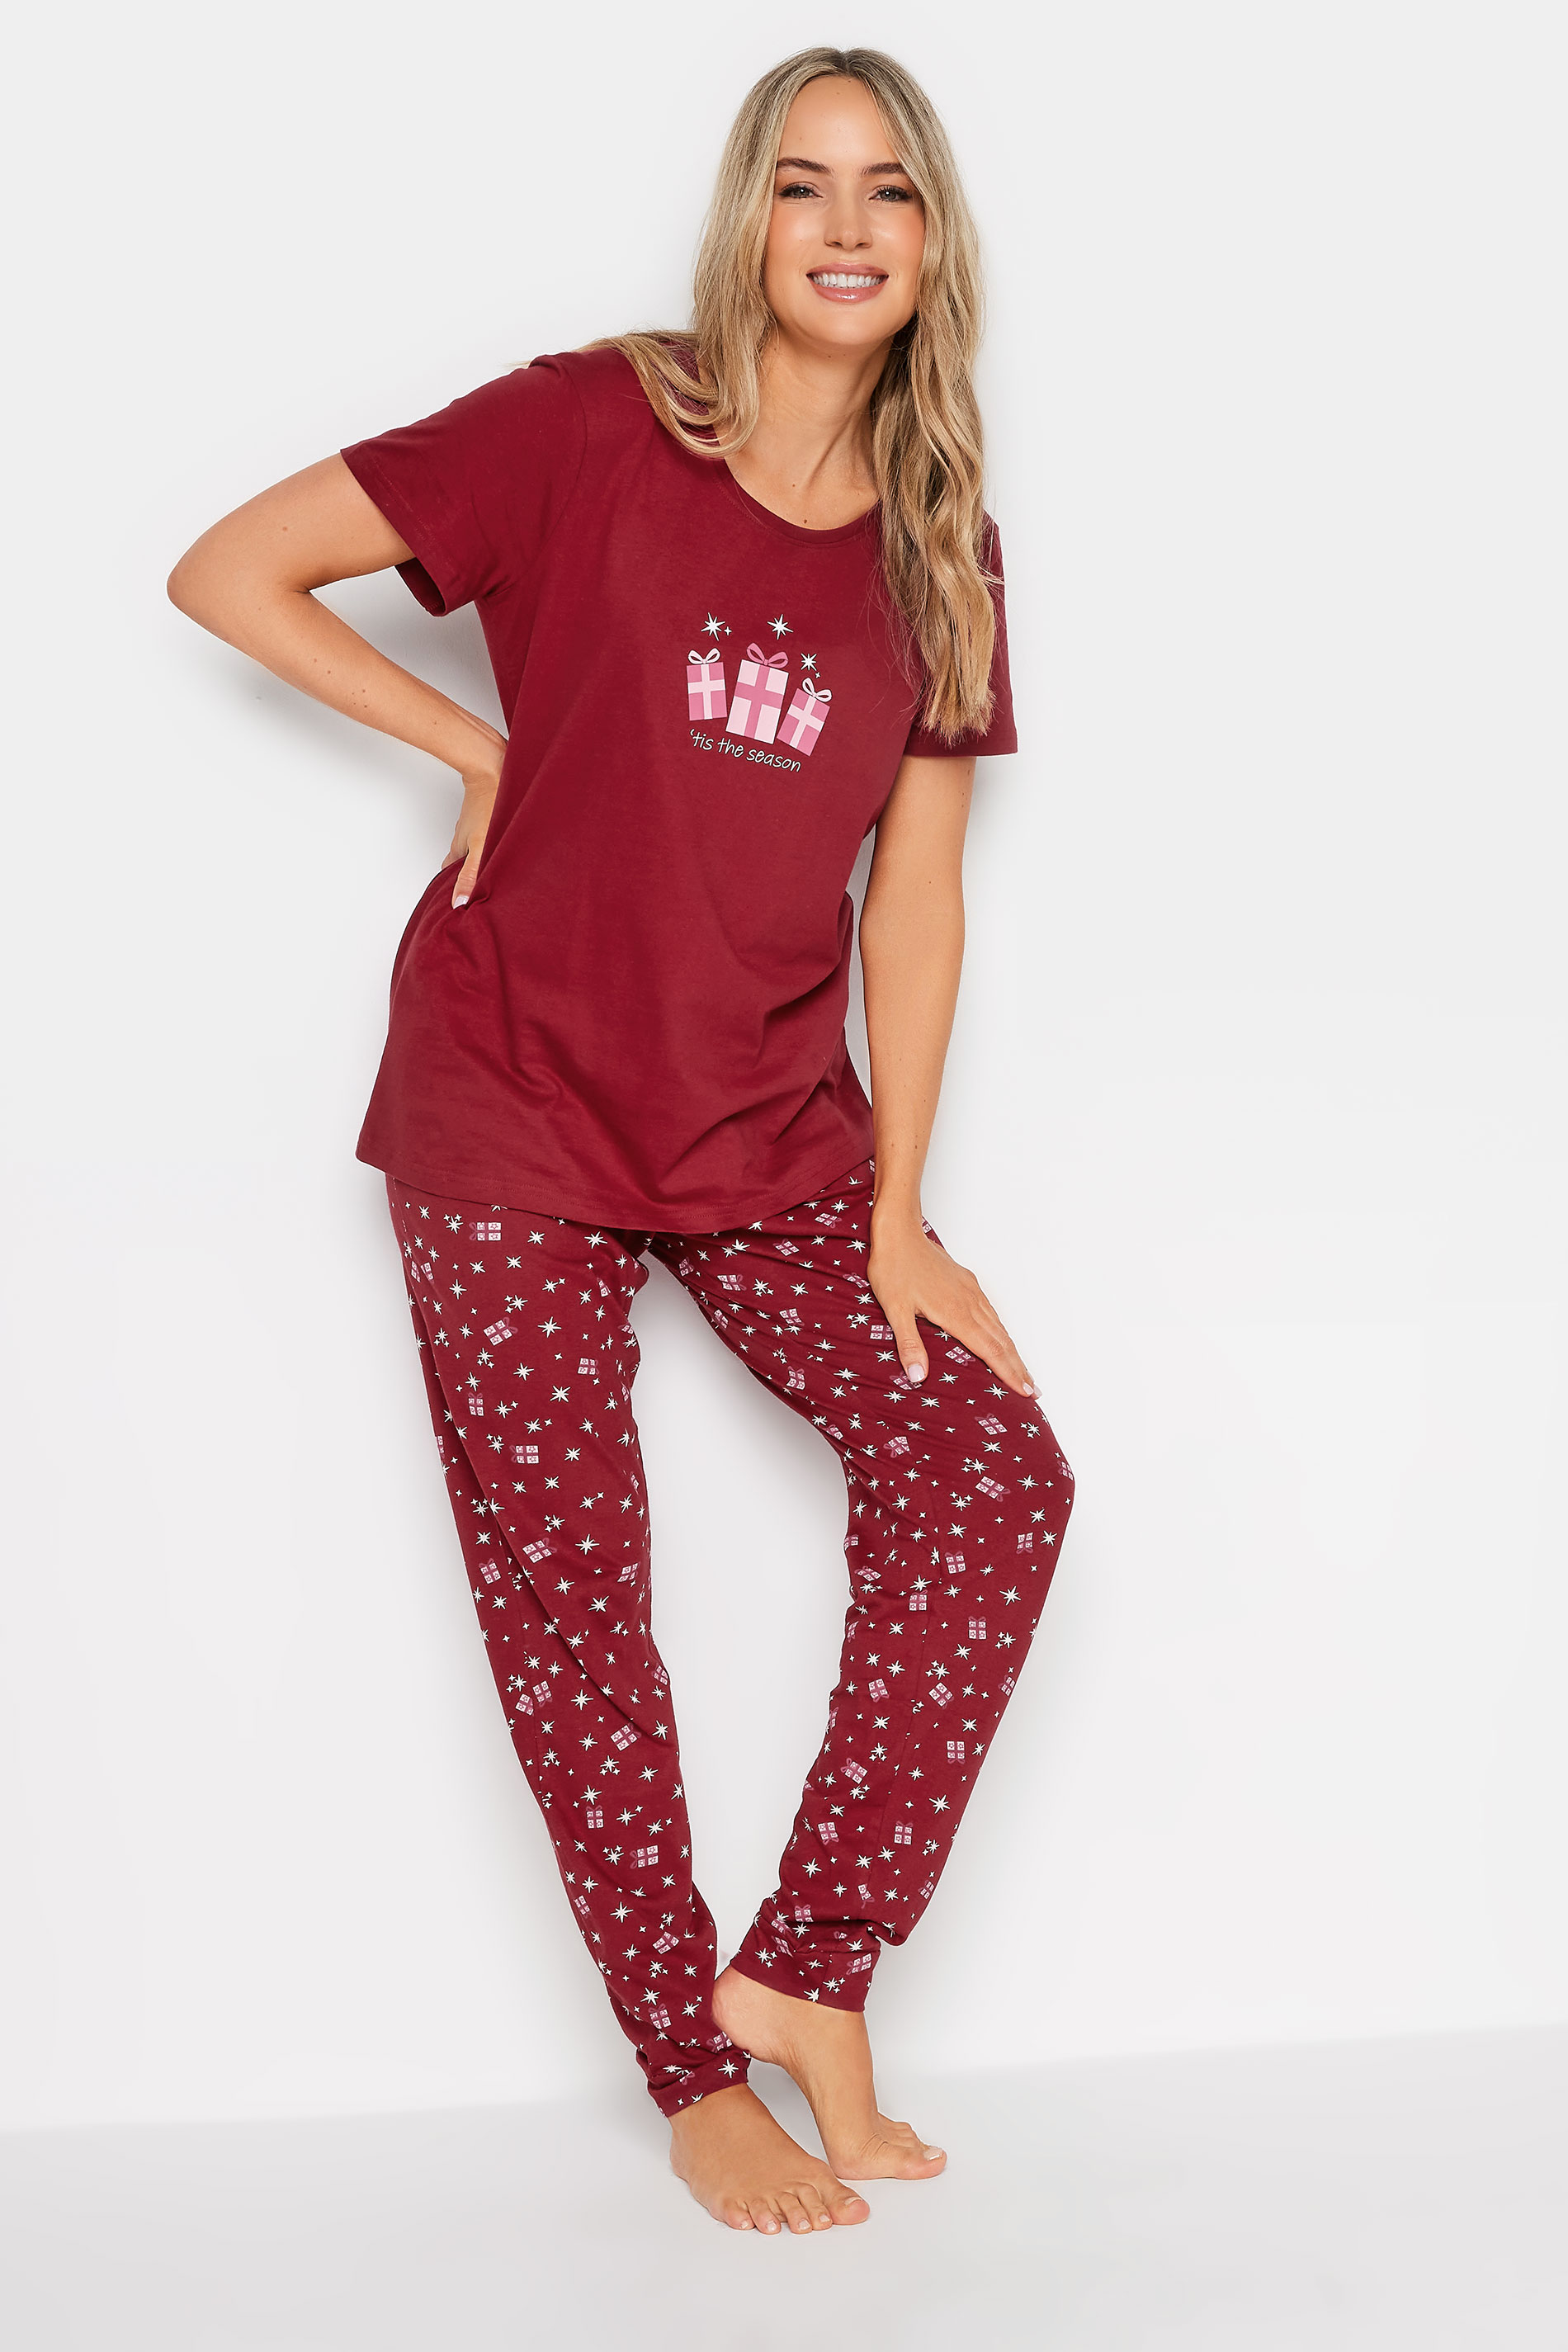 LTS Tall Red Christmas Present Print Pyjama Set | Long Tall Sally  2